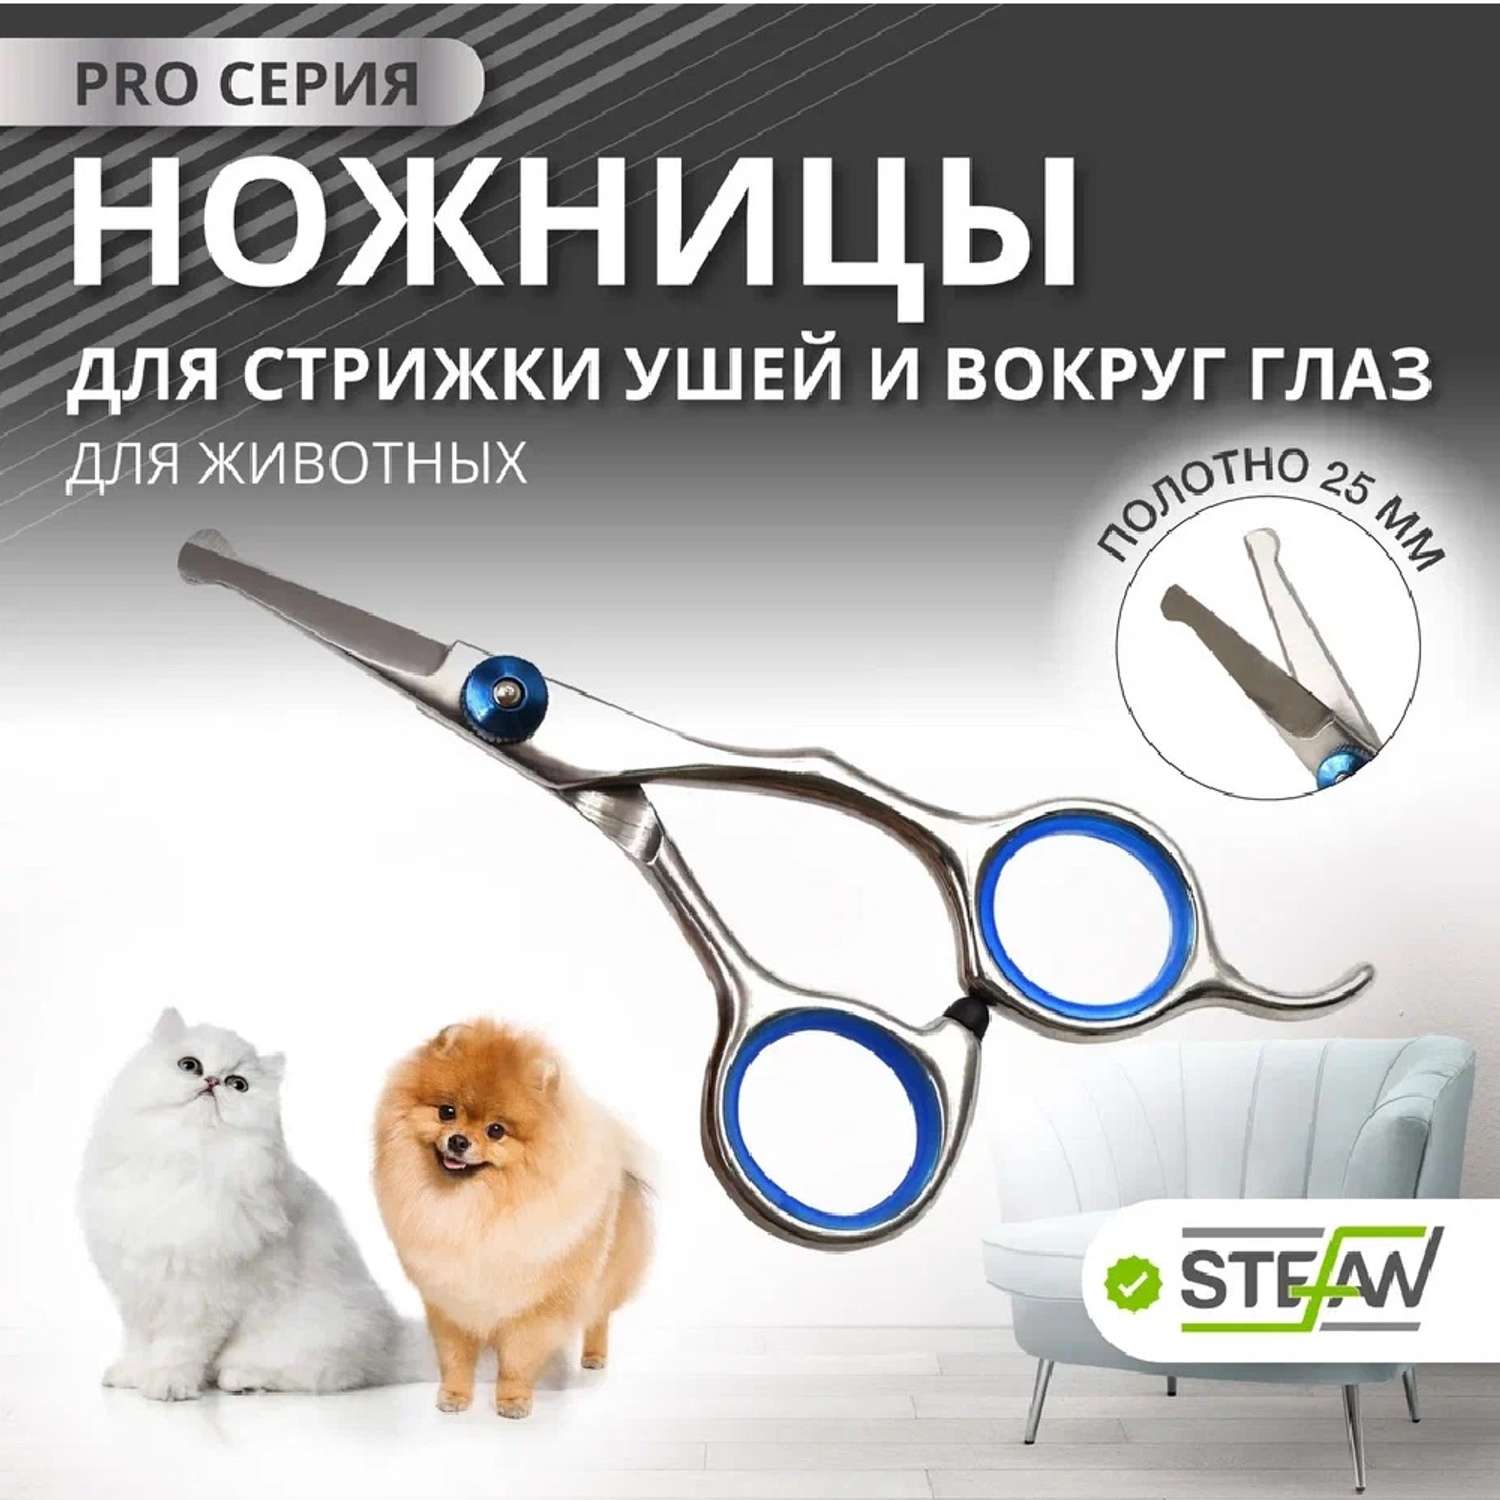 Ножницы для животных Stefan для стрижки ушей и вокруг глаз полотно 25мм - фото 1